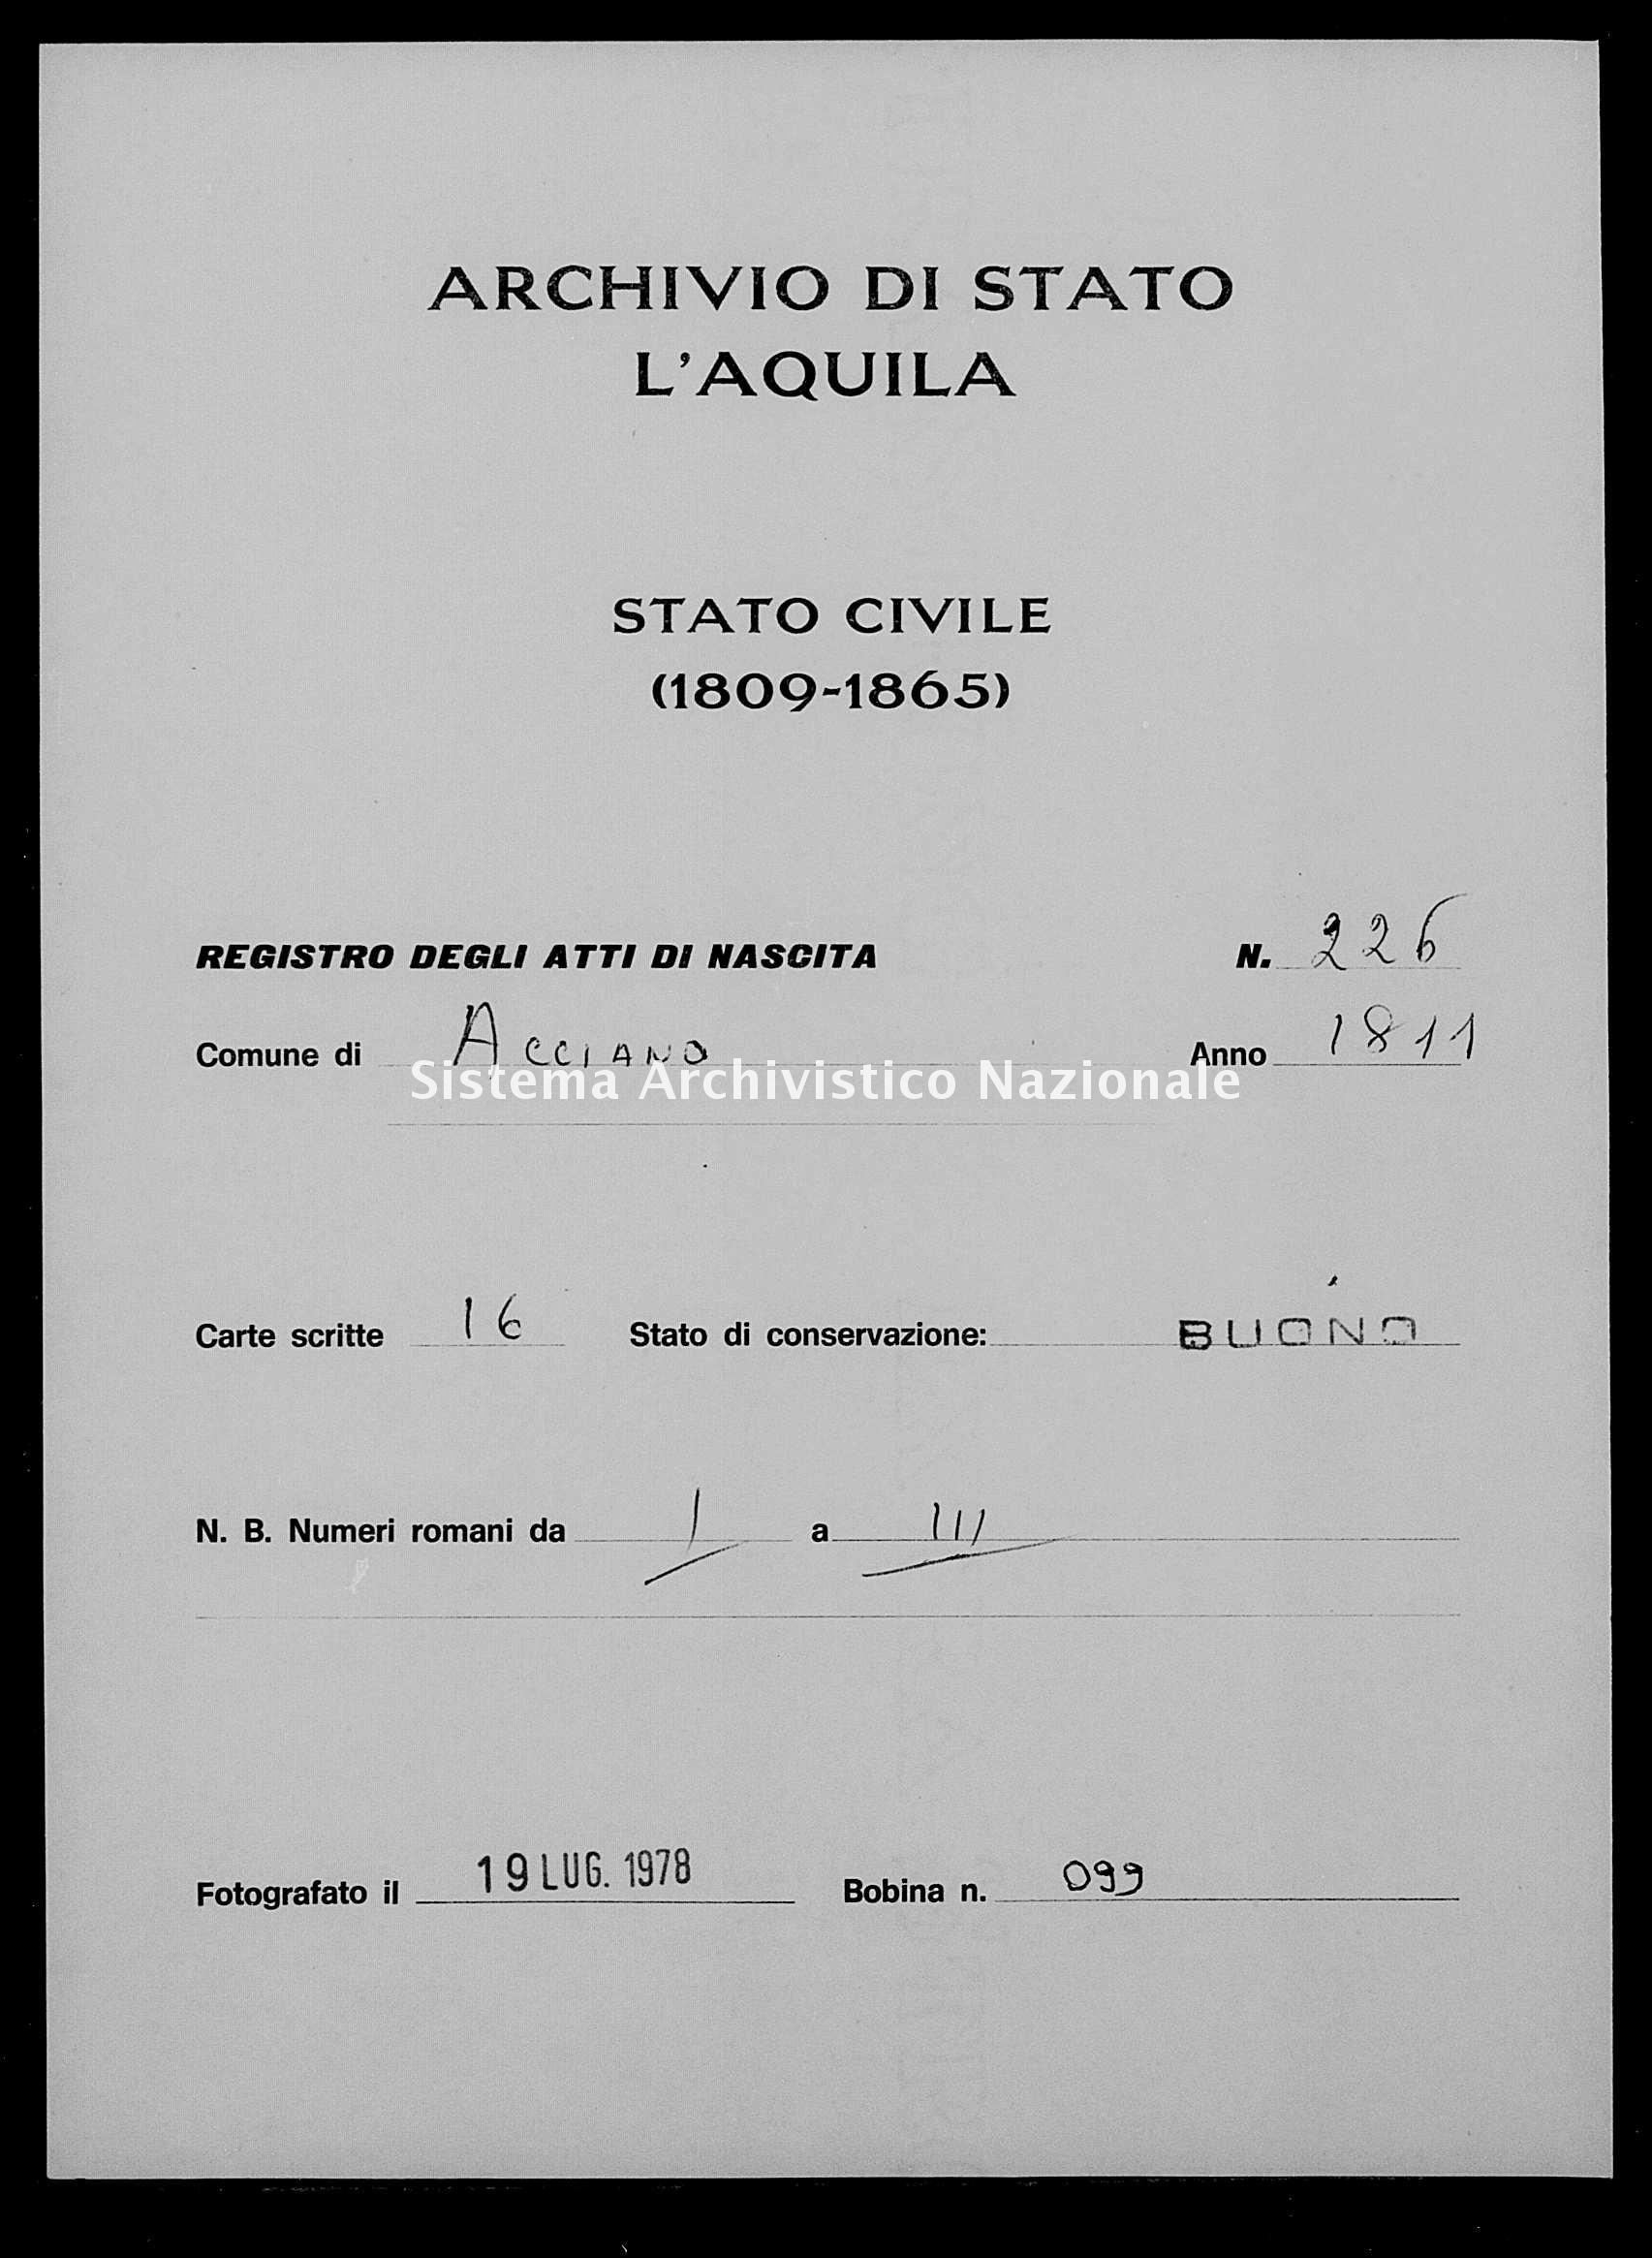 Archivio di stato di L'aquila - Stato civile napoleonico - Acciano - Nati - 1811 - 226 -